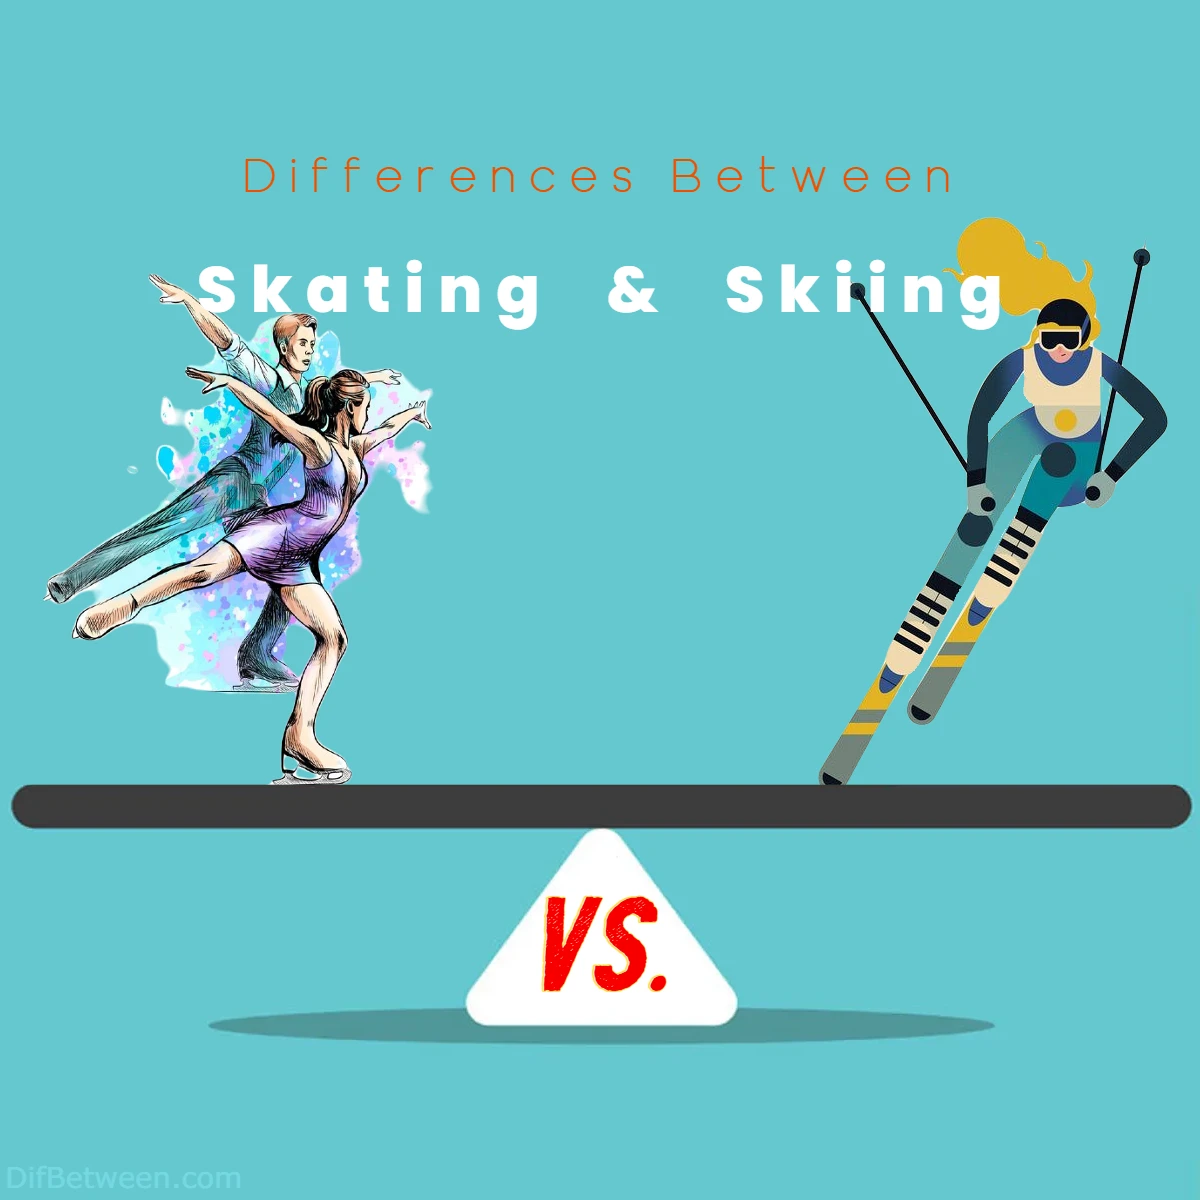 Differences Between Skating vs Skiing